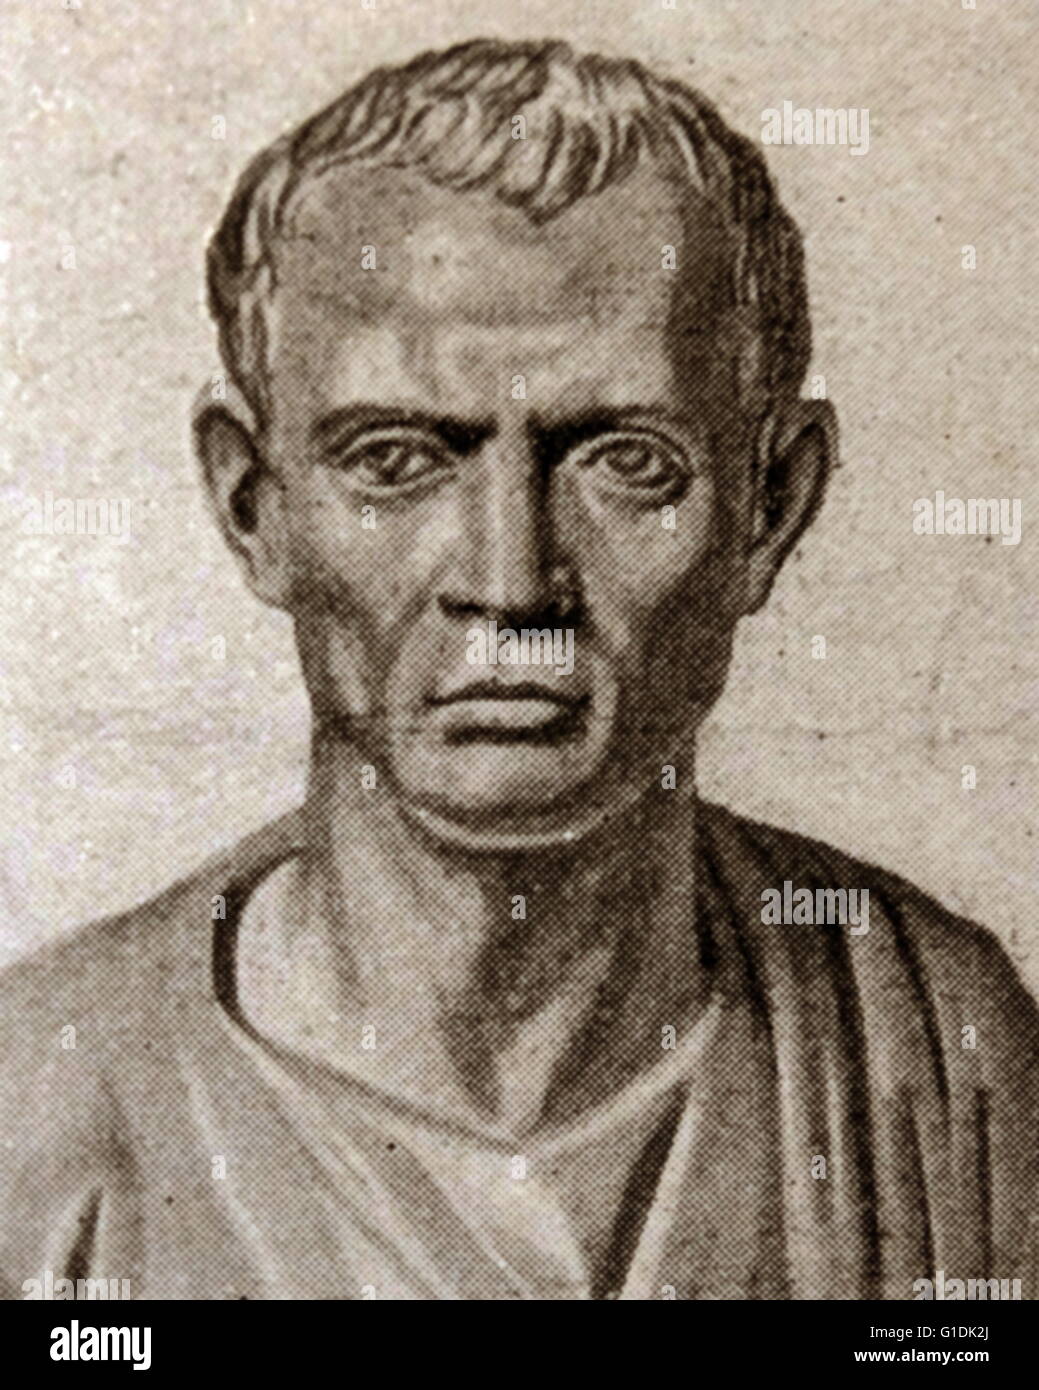 Bust of Marcus Tullius Cicero (107-43 BC) Roman philosopher, politician, lawyer, orator, political theorist, consul and constitutionalist. Stock Photo